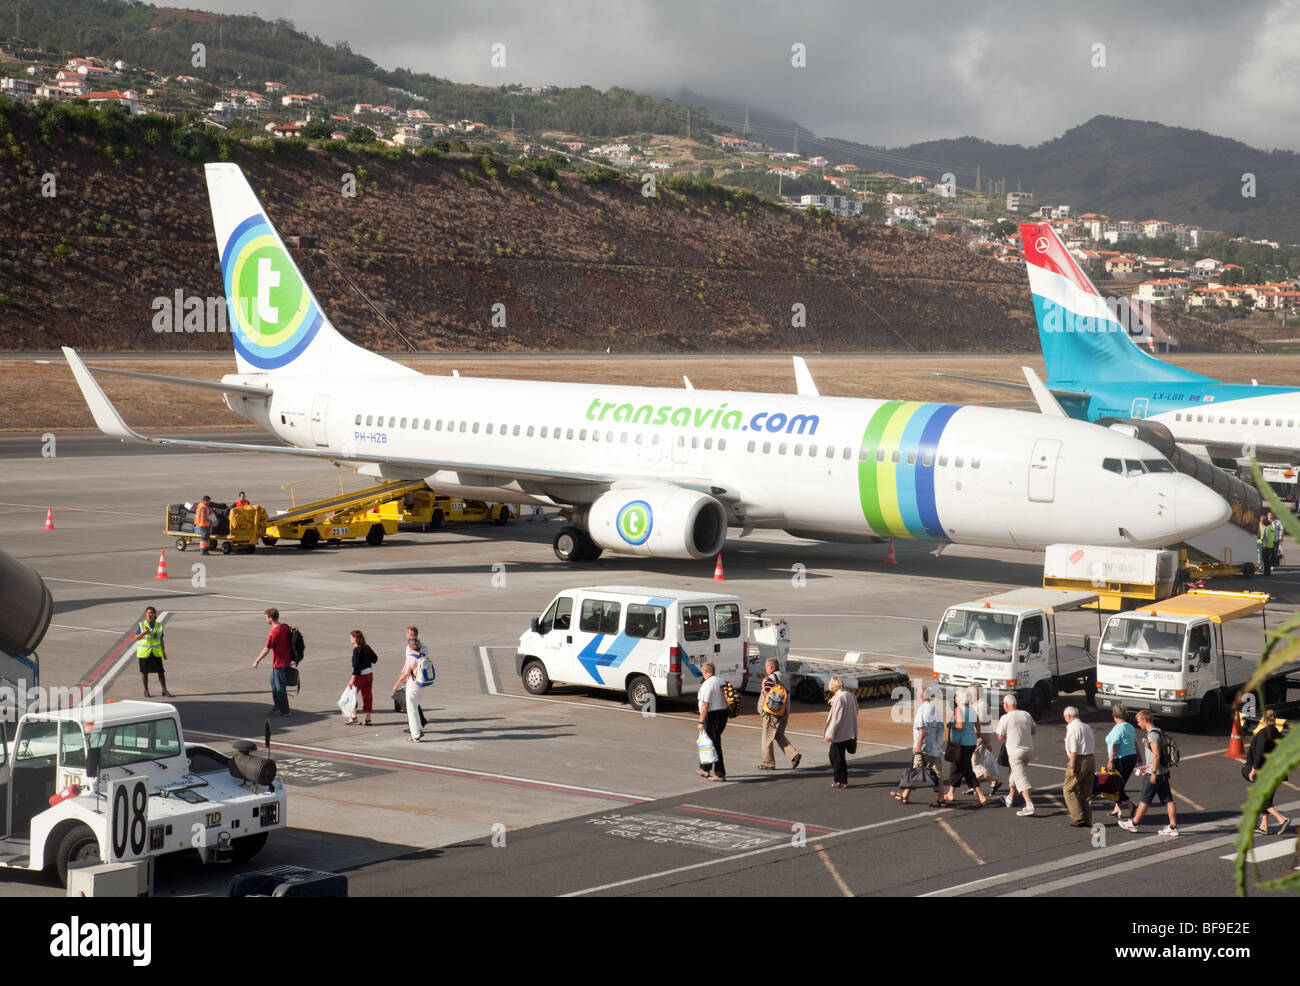 Un piano di Transavia su asfalto, l'aeroporto di Funchal, Funchal, Madeira Foto Stock